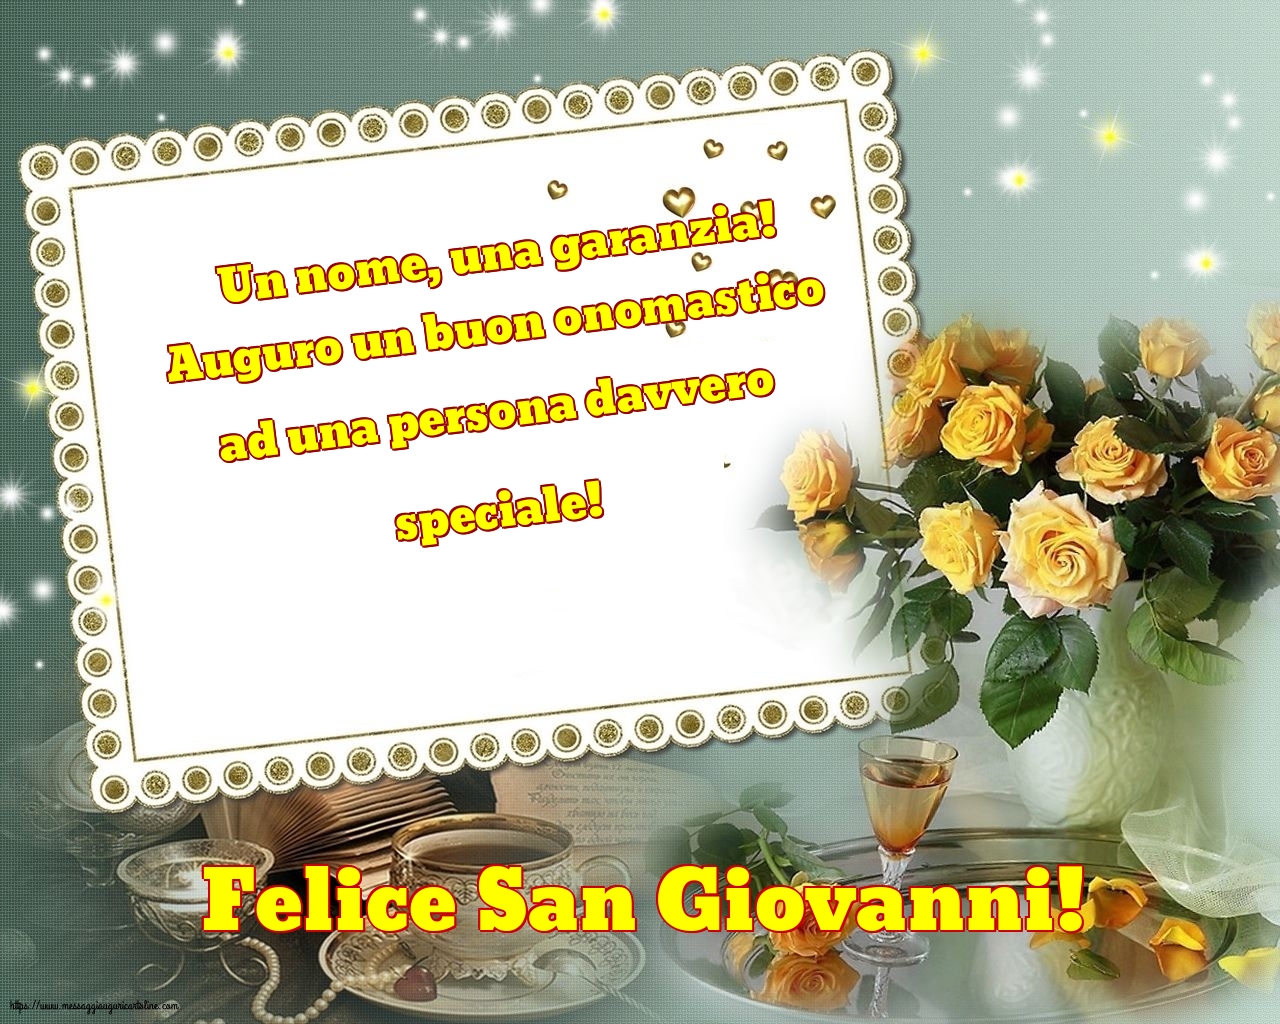 San Giovanni Felice San Giovanni!